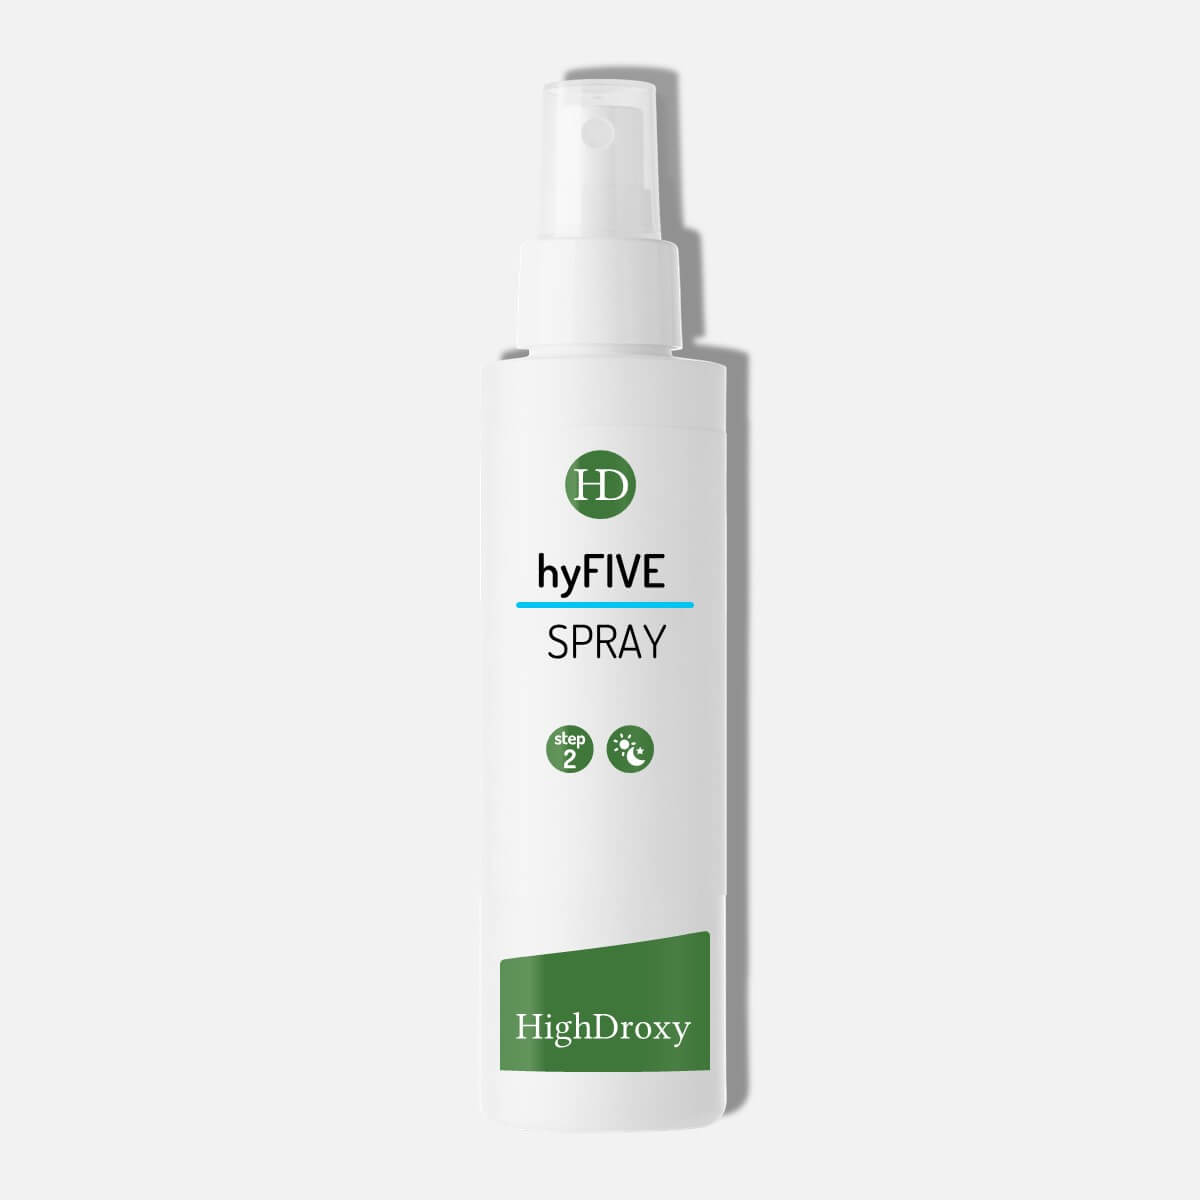 Vollgröße vom HighDroxy hyFive Spray vor grauem Hintergrund